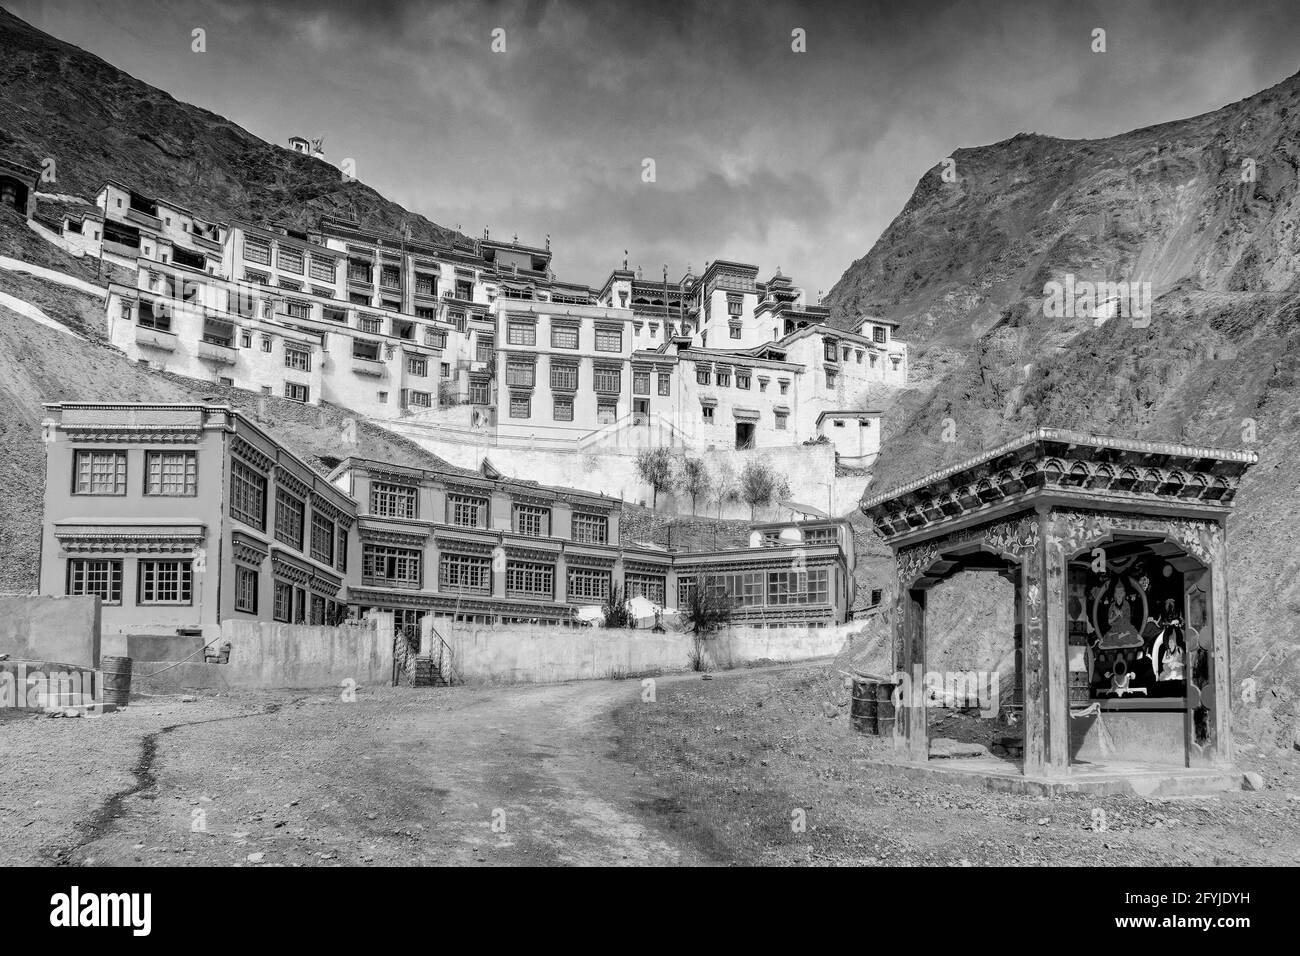 Rizong Kloster mit Blick auf Himalaya-Berge - es ist ein berühmter buddhistischer Tempel in,Leh, Ladakh, Jammu und Kaschmir, Indien. Schwarzweiß-Bild. Stockfoto